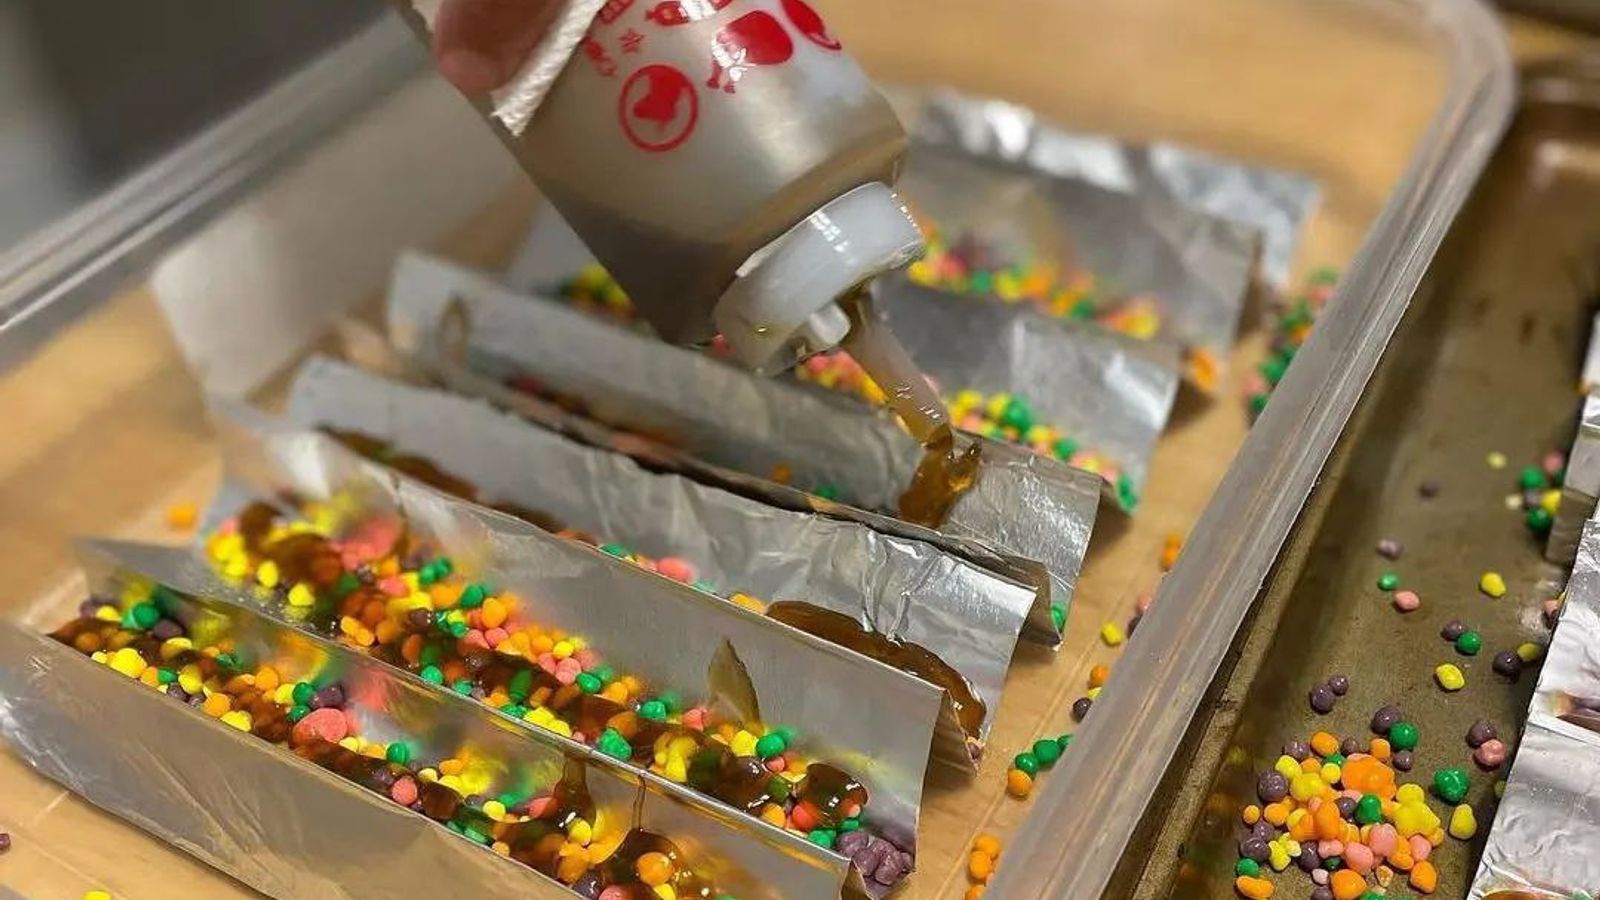 Ëmbëlsirat me kanabis “po tregtohen te fëmijët”, shiten gjerësisht përmes rrjeteve sociale